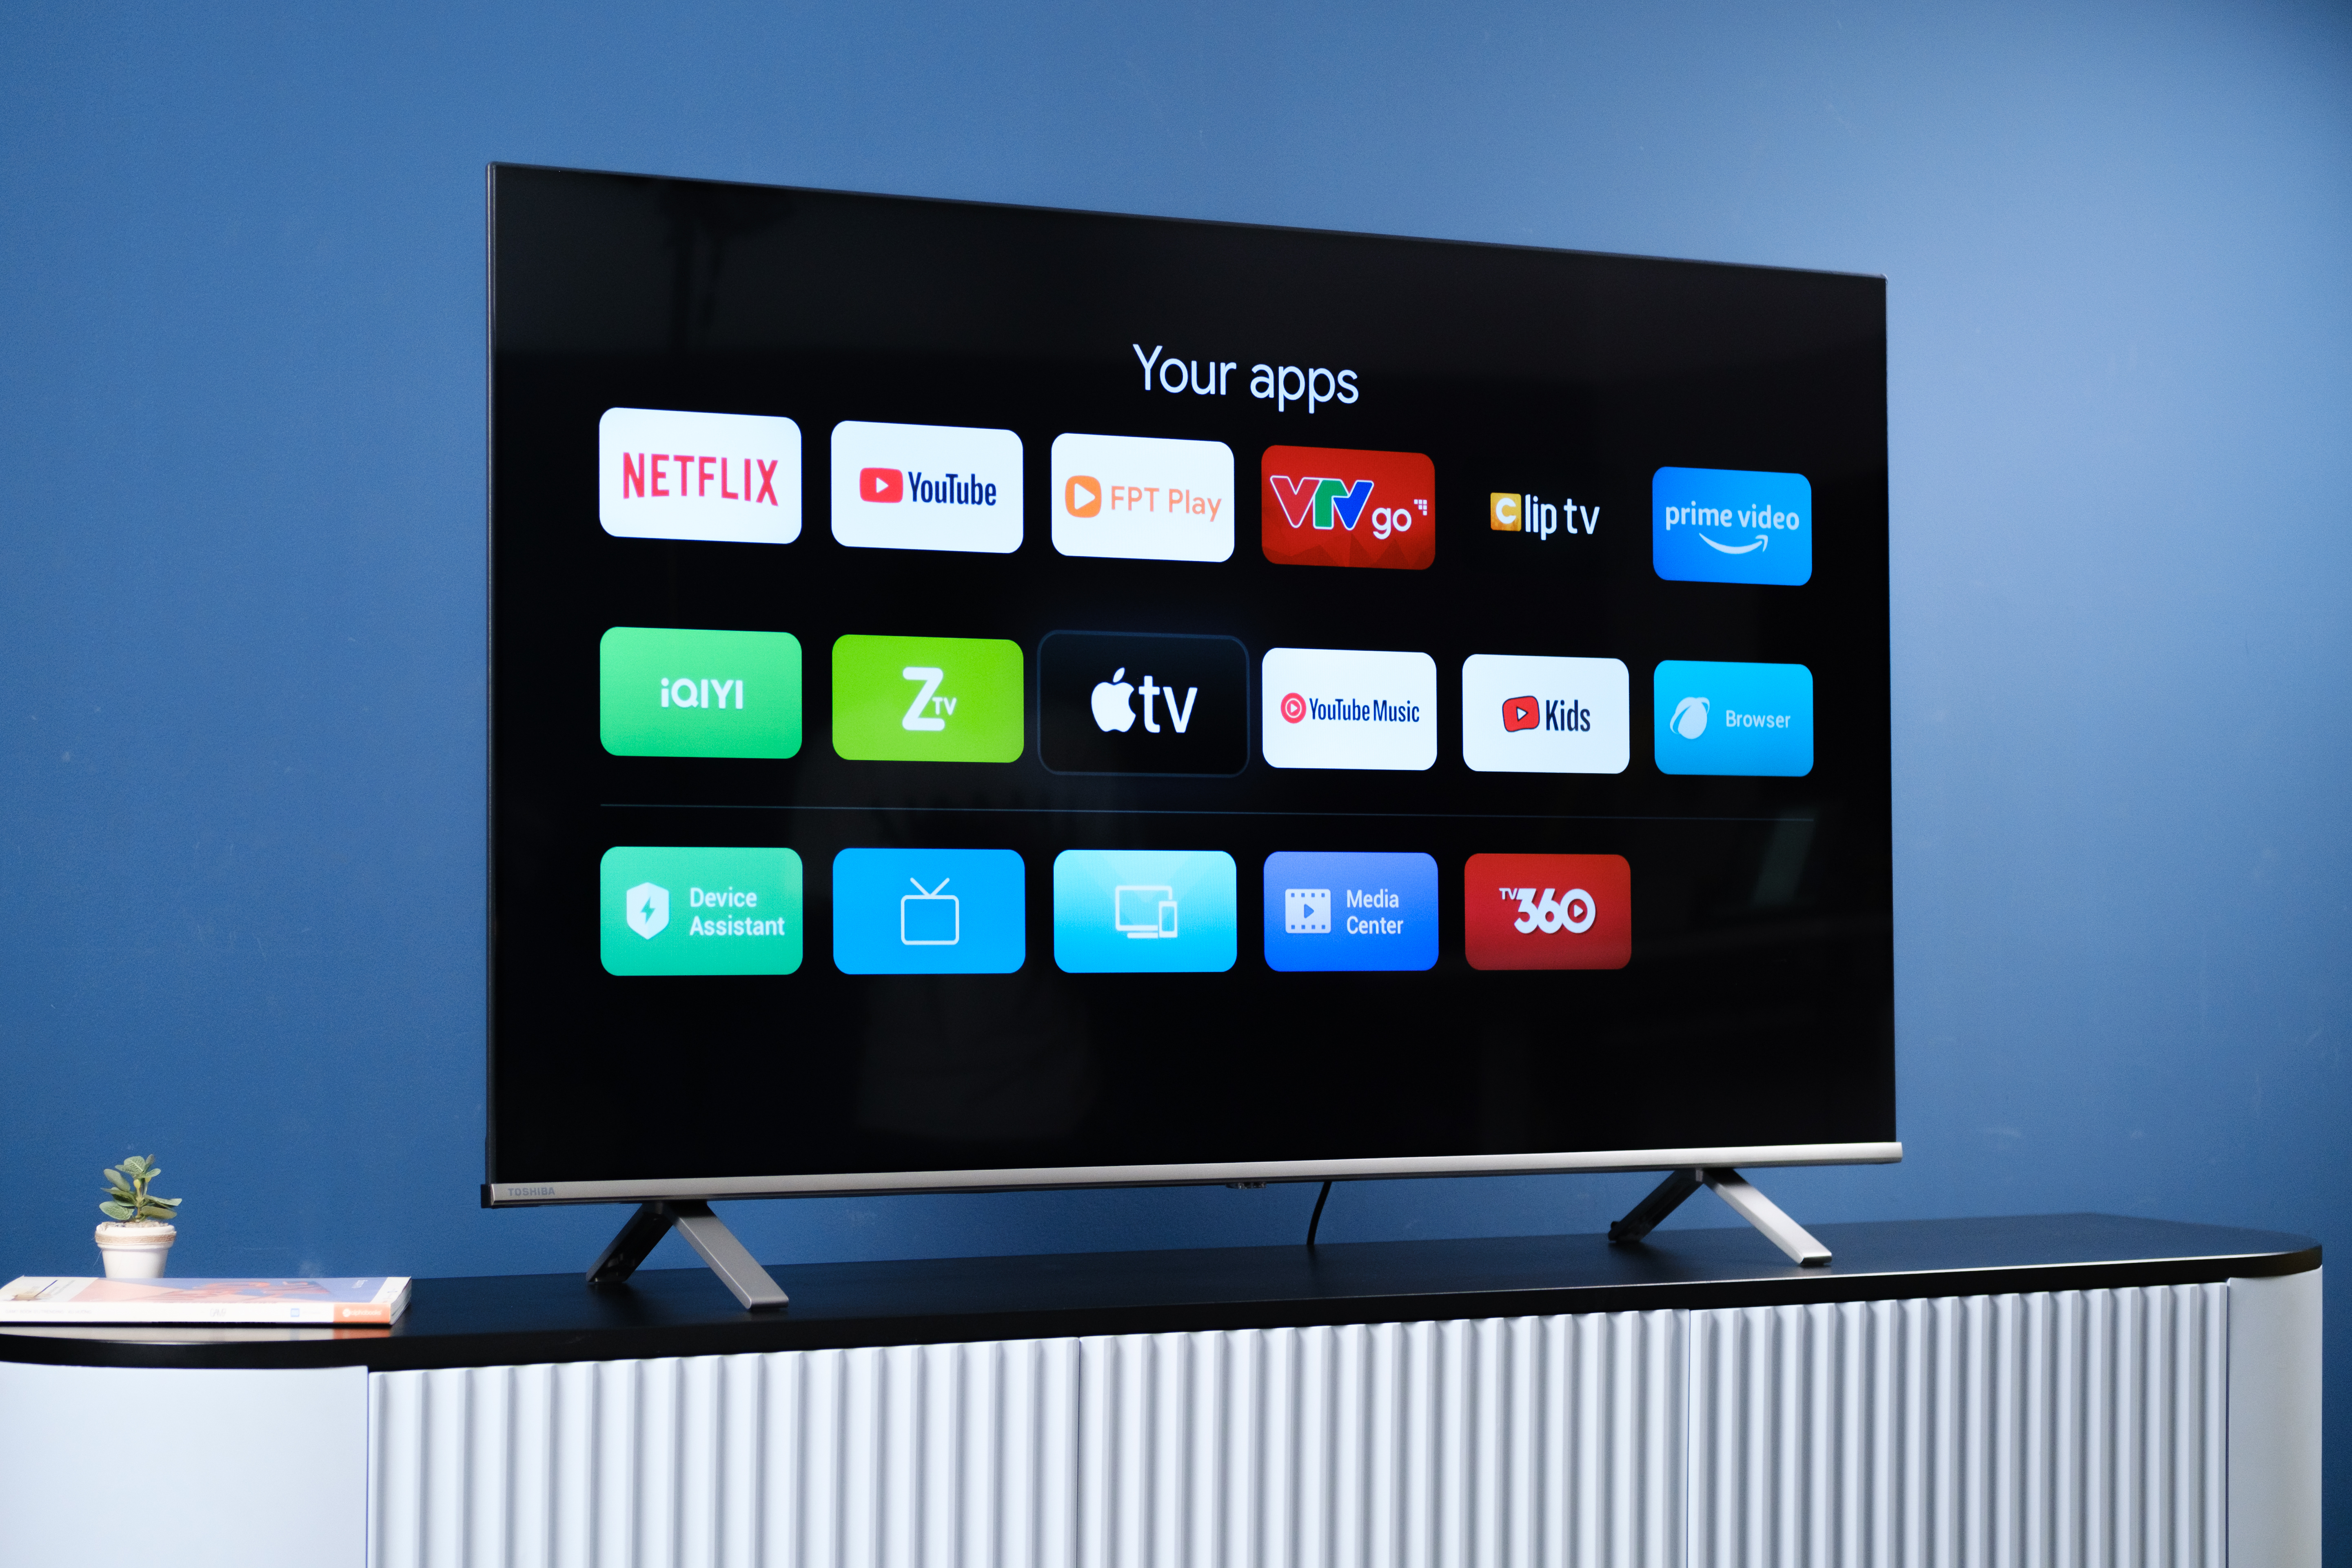 Pour les French Days, le prix de cette Smart TV TOSHIBA LED 4K tombe à 274,99 € !